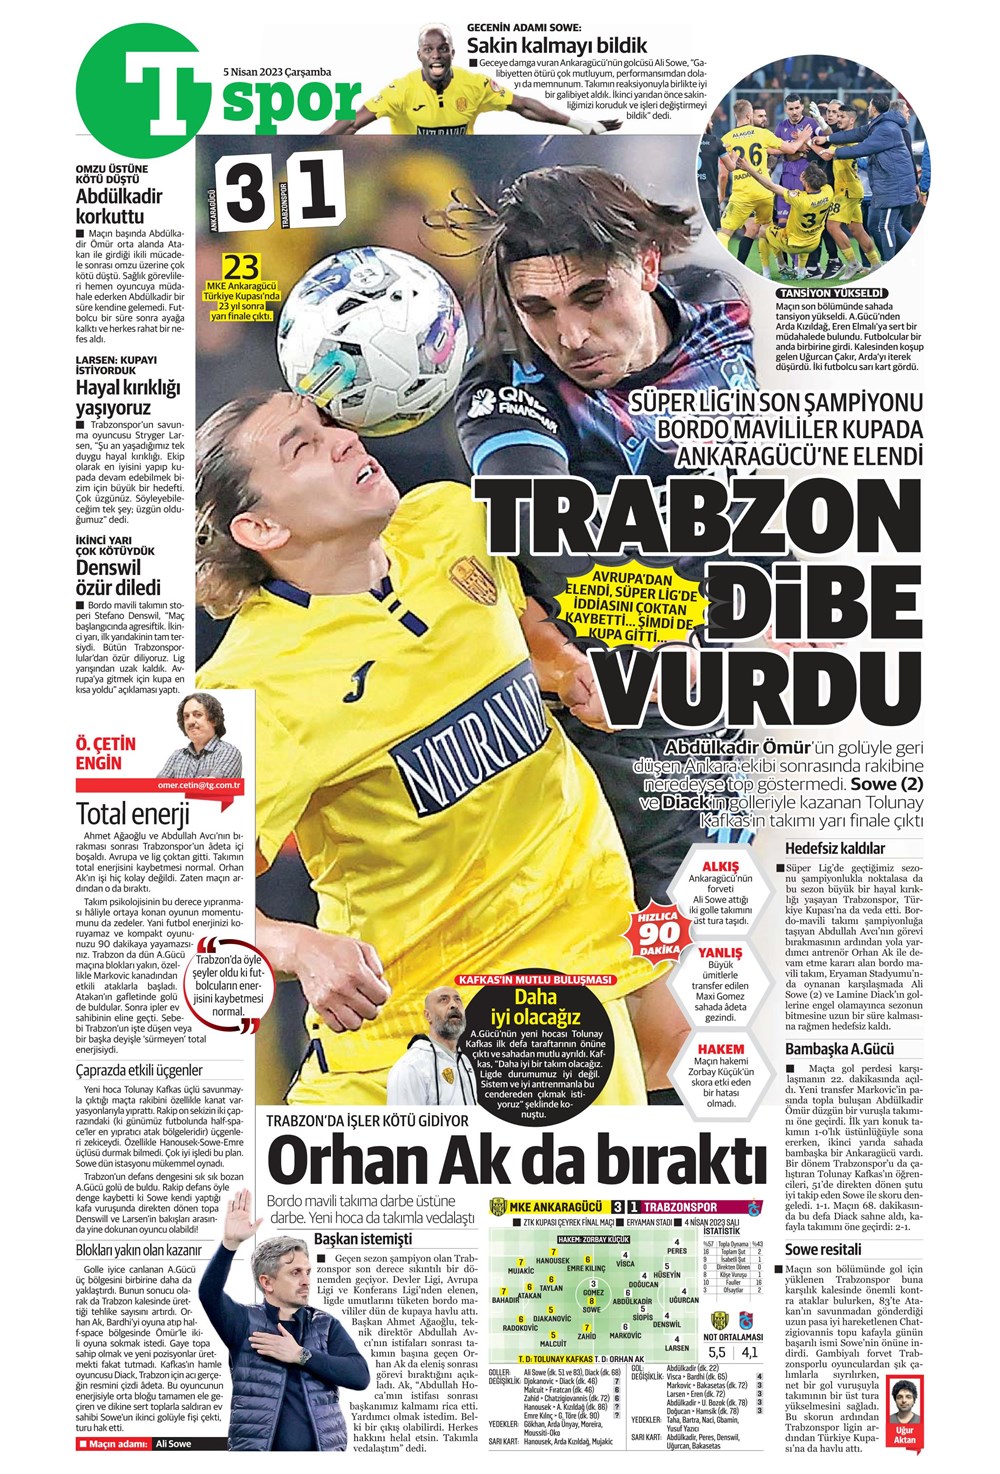 "Dünyada kimse buna penaltı demez" - Sporun manşetleri (5 Nisan 2023)  - 31. Foto